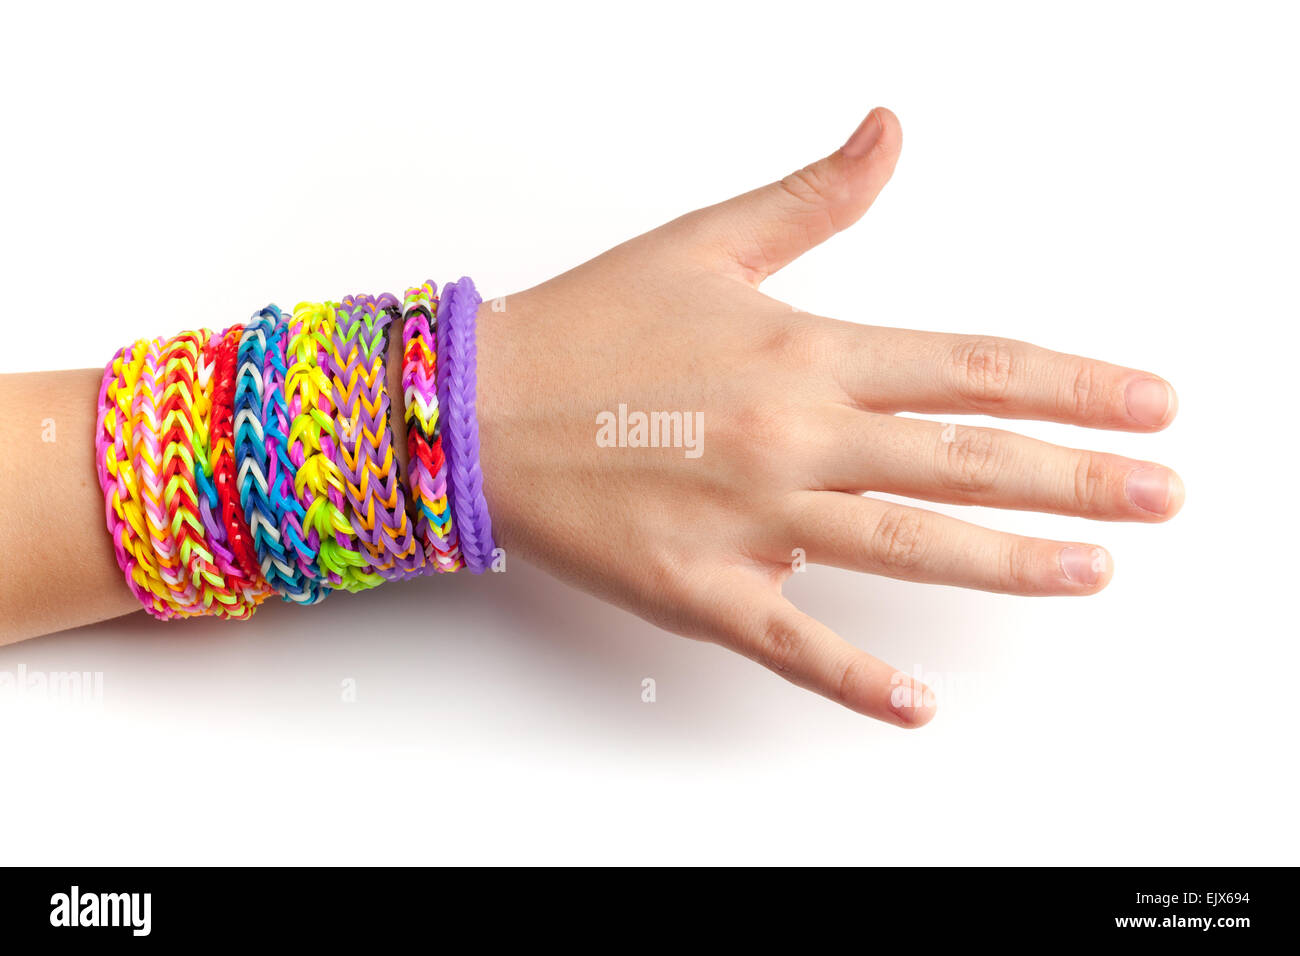 Rainbow rubber band bracelet isolated on white Stock Photo - Alamy